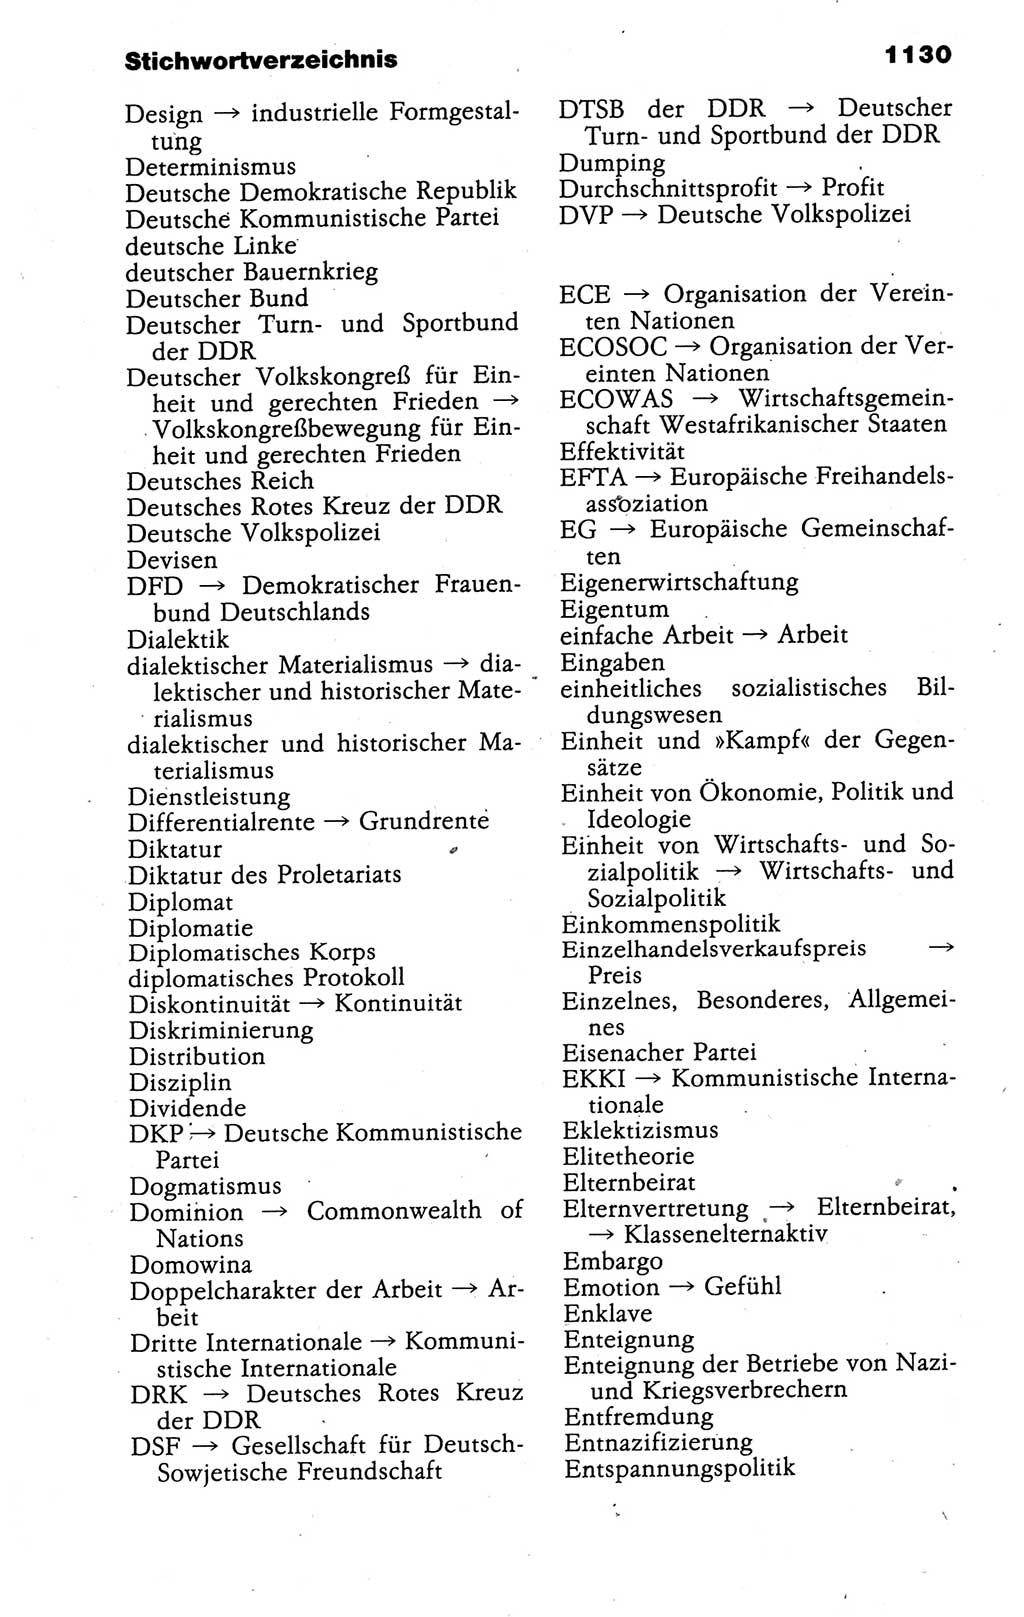 Kleines politisches Wörterbuch [Deutsche Demokratische Republik (DDR)] 1988, Seite 1130 (Kl. pol. Wb. DDR 1988, S. 1130)